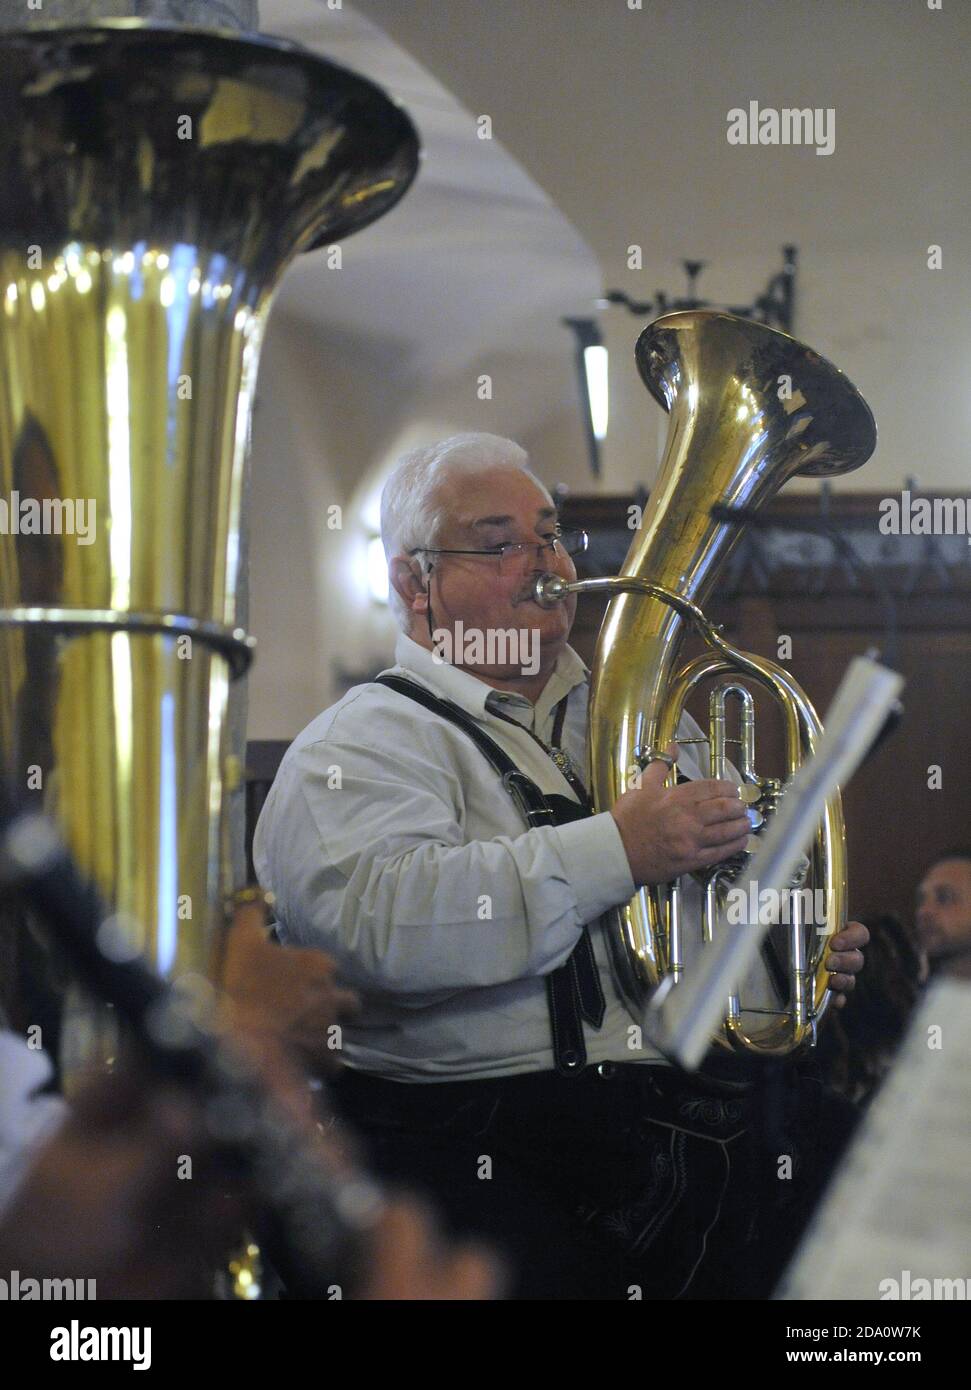 Un joueur de tuba habillé à Lederhosen dans un groupe traditionnel de cuivres bavarois joue dans le célèbre pub Hofbrahaus de Munich, en Allemagne. Banque D'Images